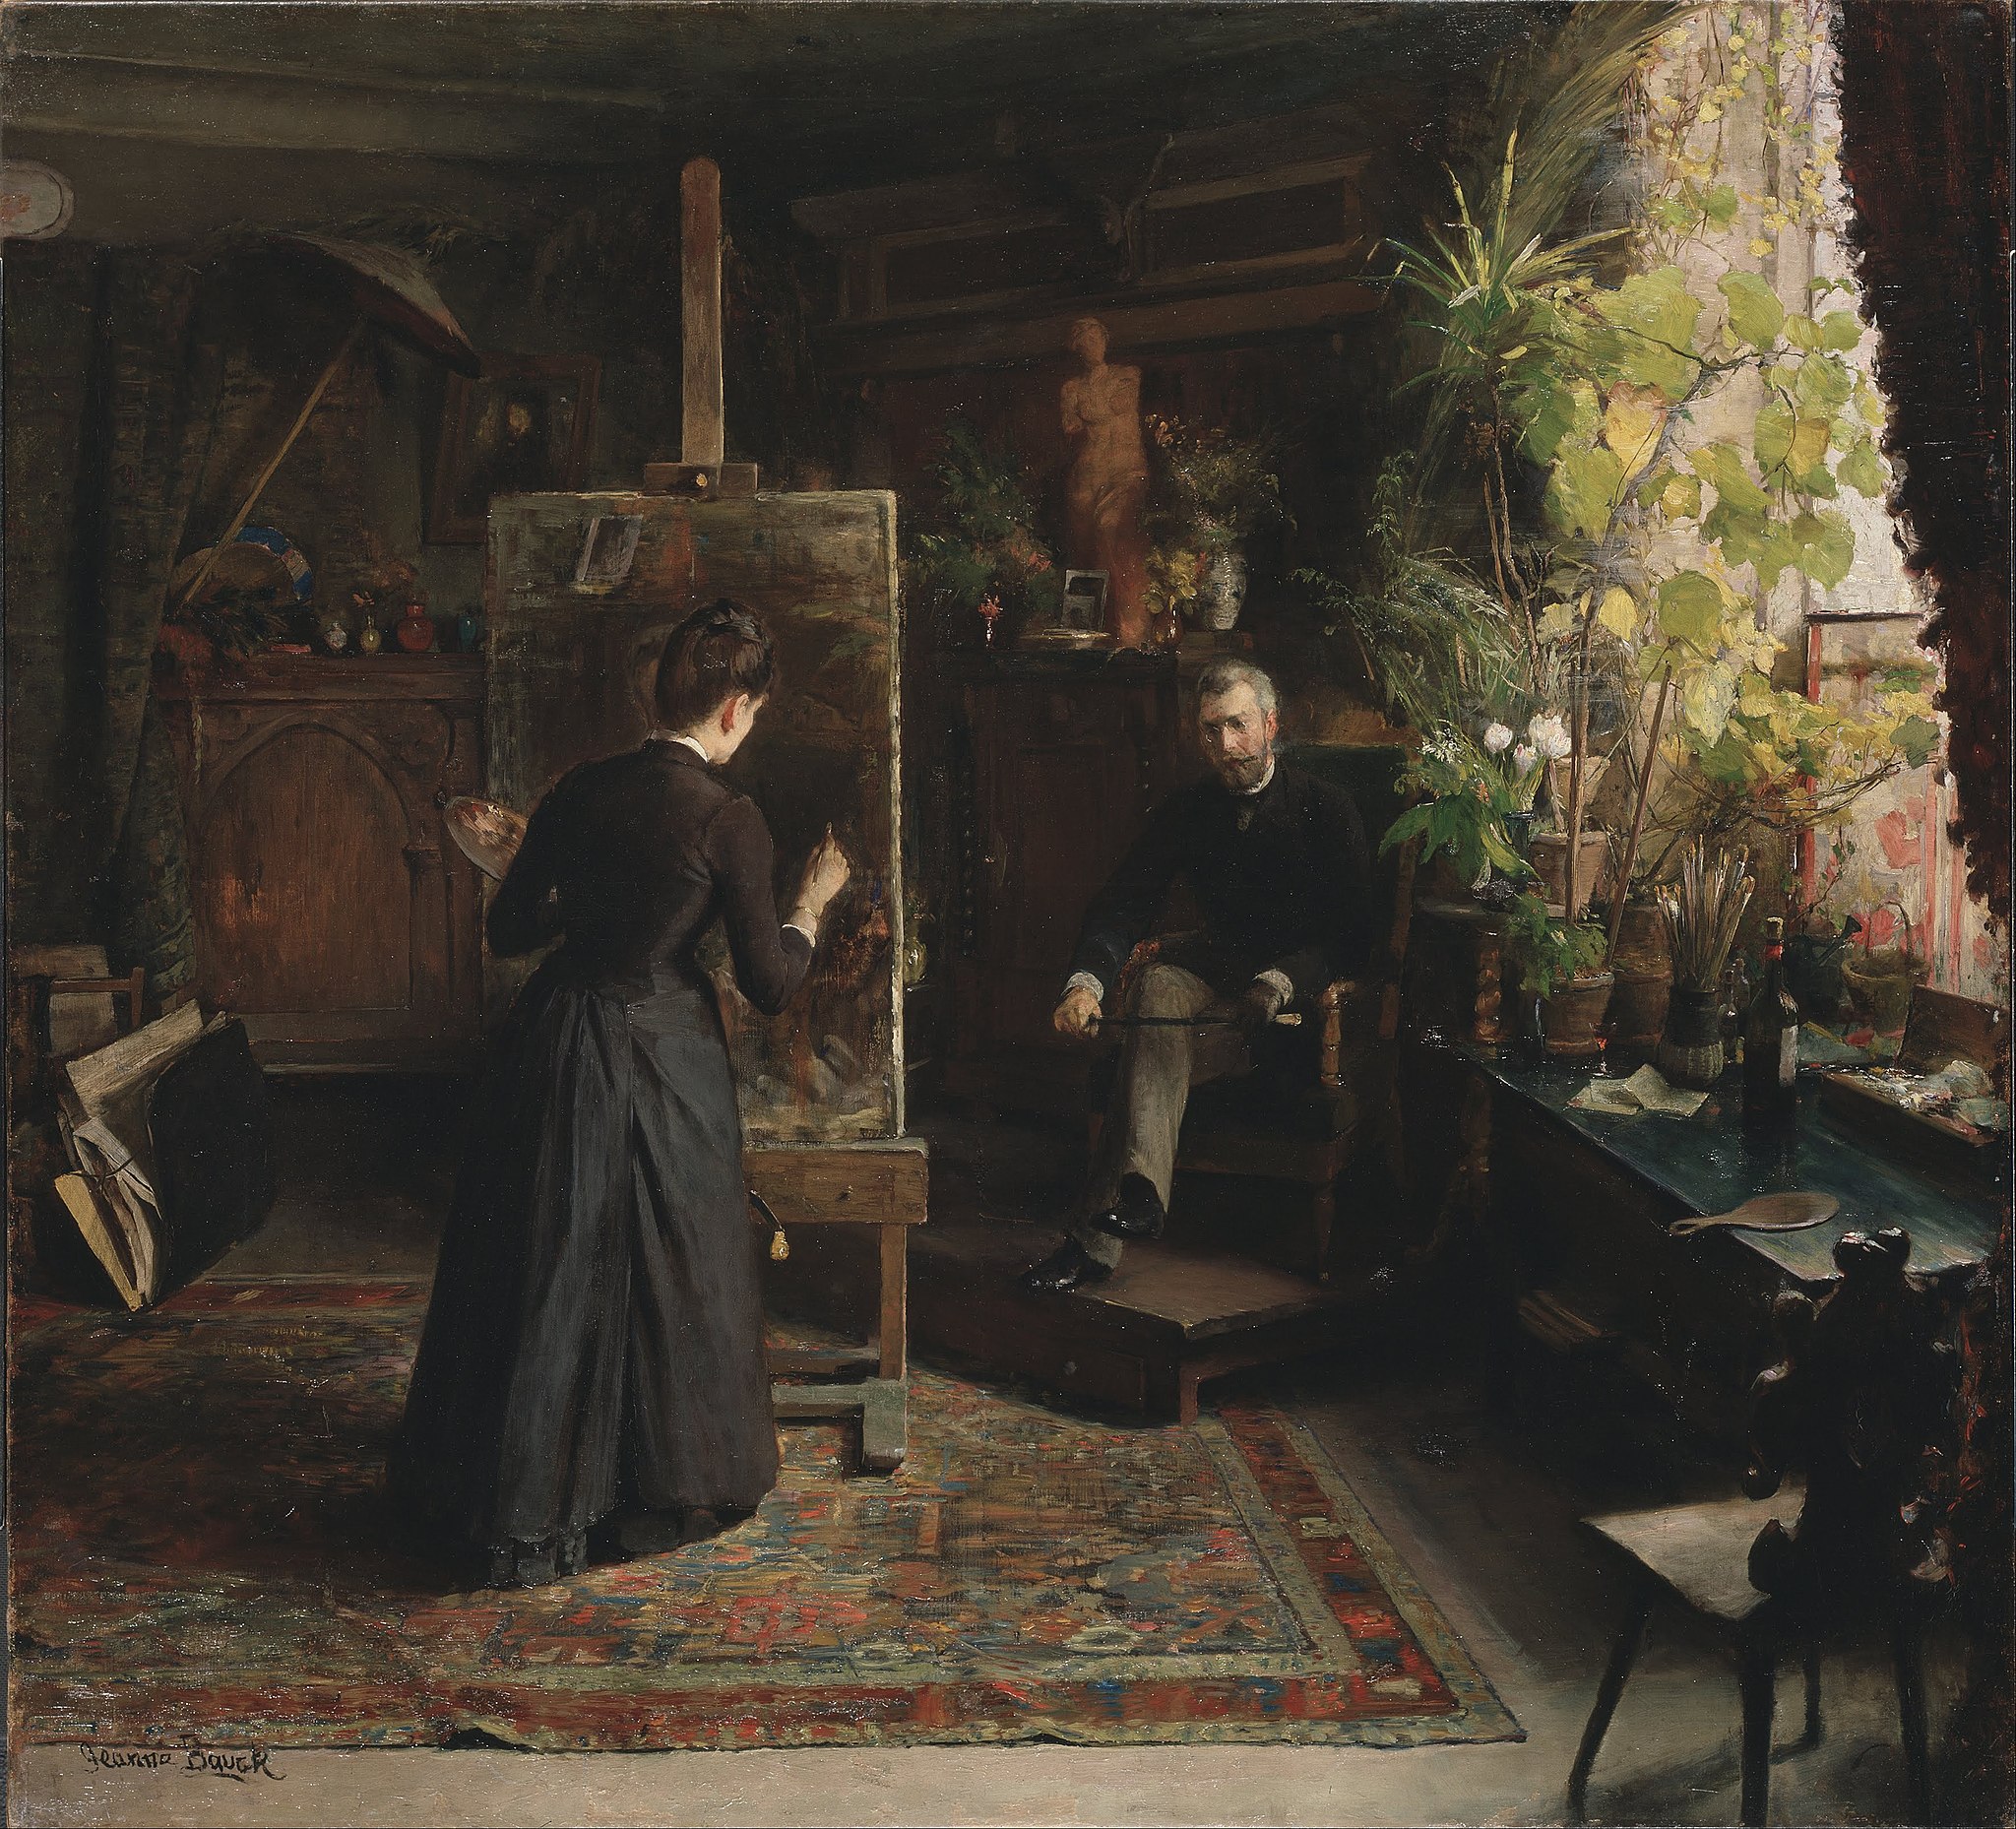 هنرمند دانمارکی، برتا وگمن، در حال ترسیم یک پرتره by Jeanna Bauck - 1870-80 - 100 x 110 cm 